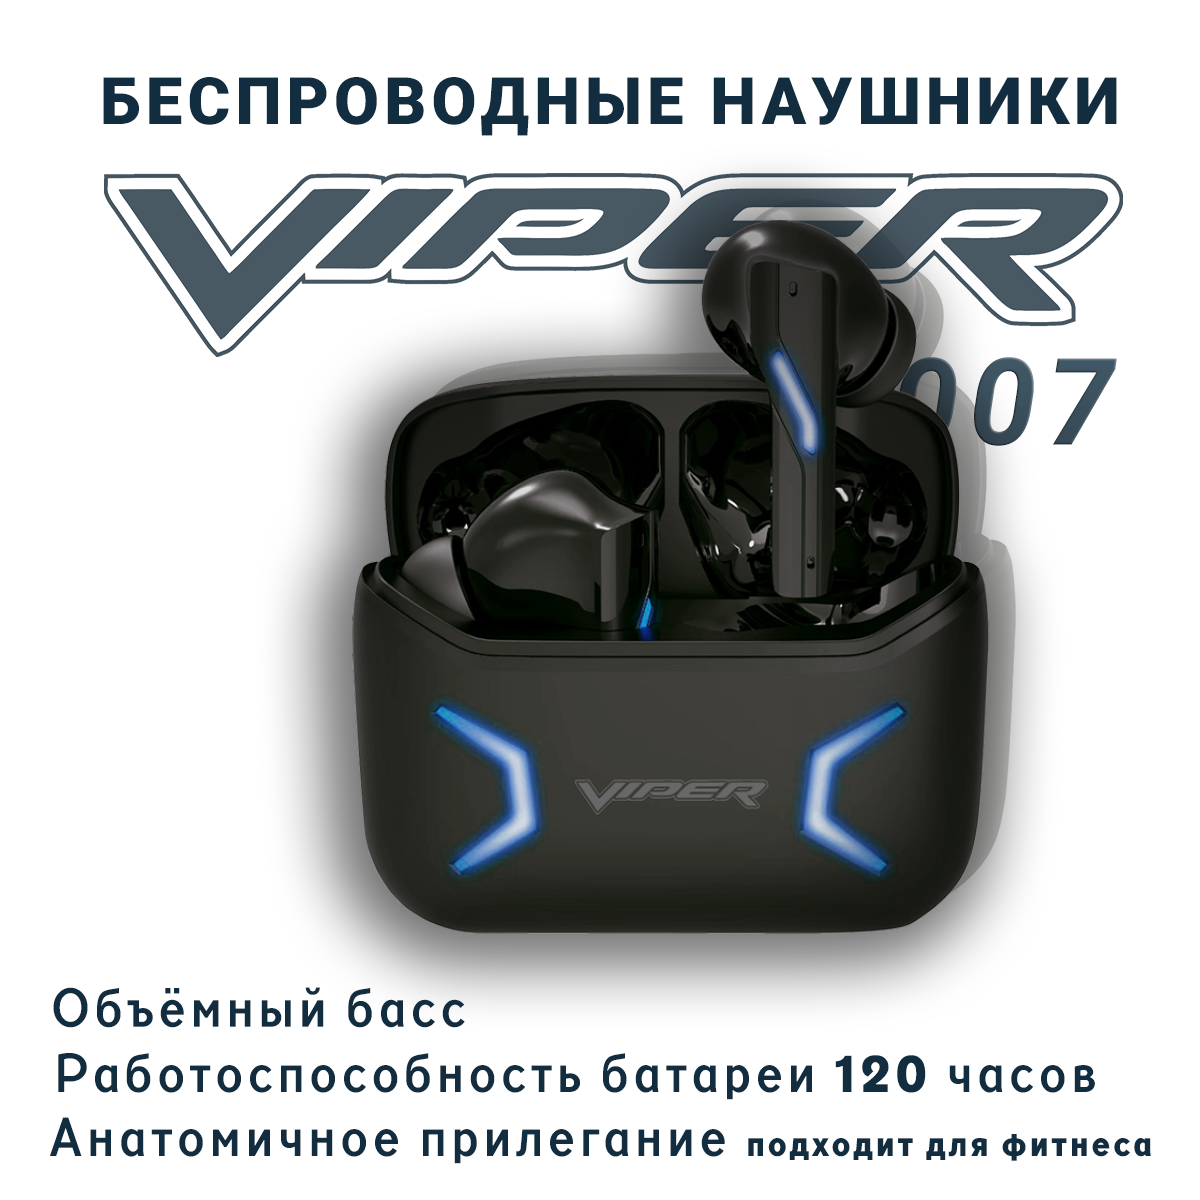 Беспроводные наушники Viper "007"